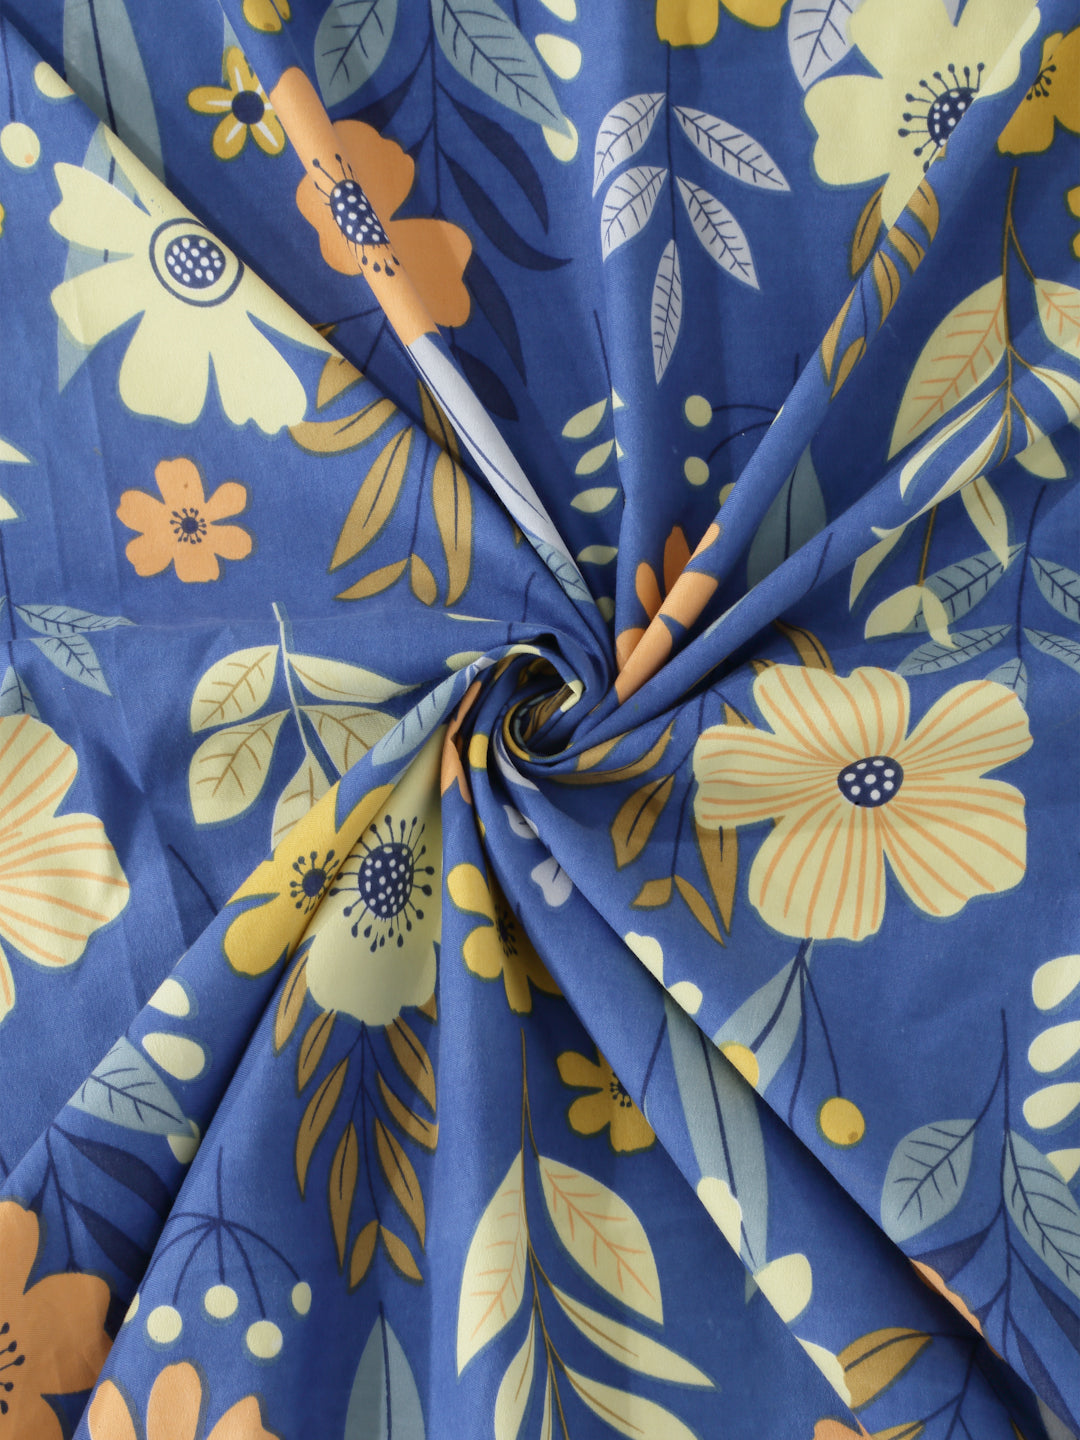 Arrabi Blue Floral Cotton Blend 6 SEATER Table Cover (180 x 130 cm)